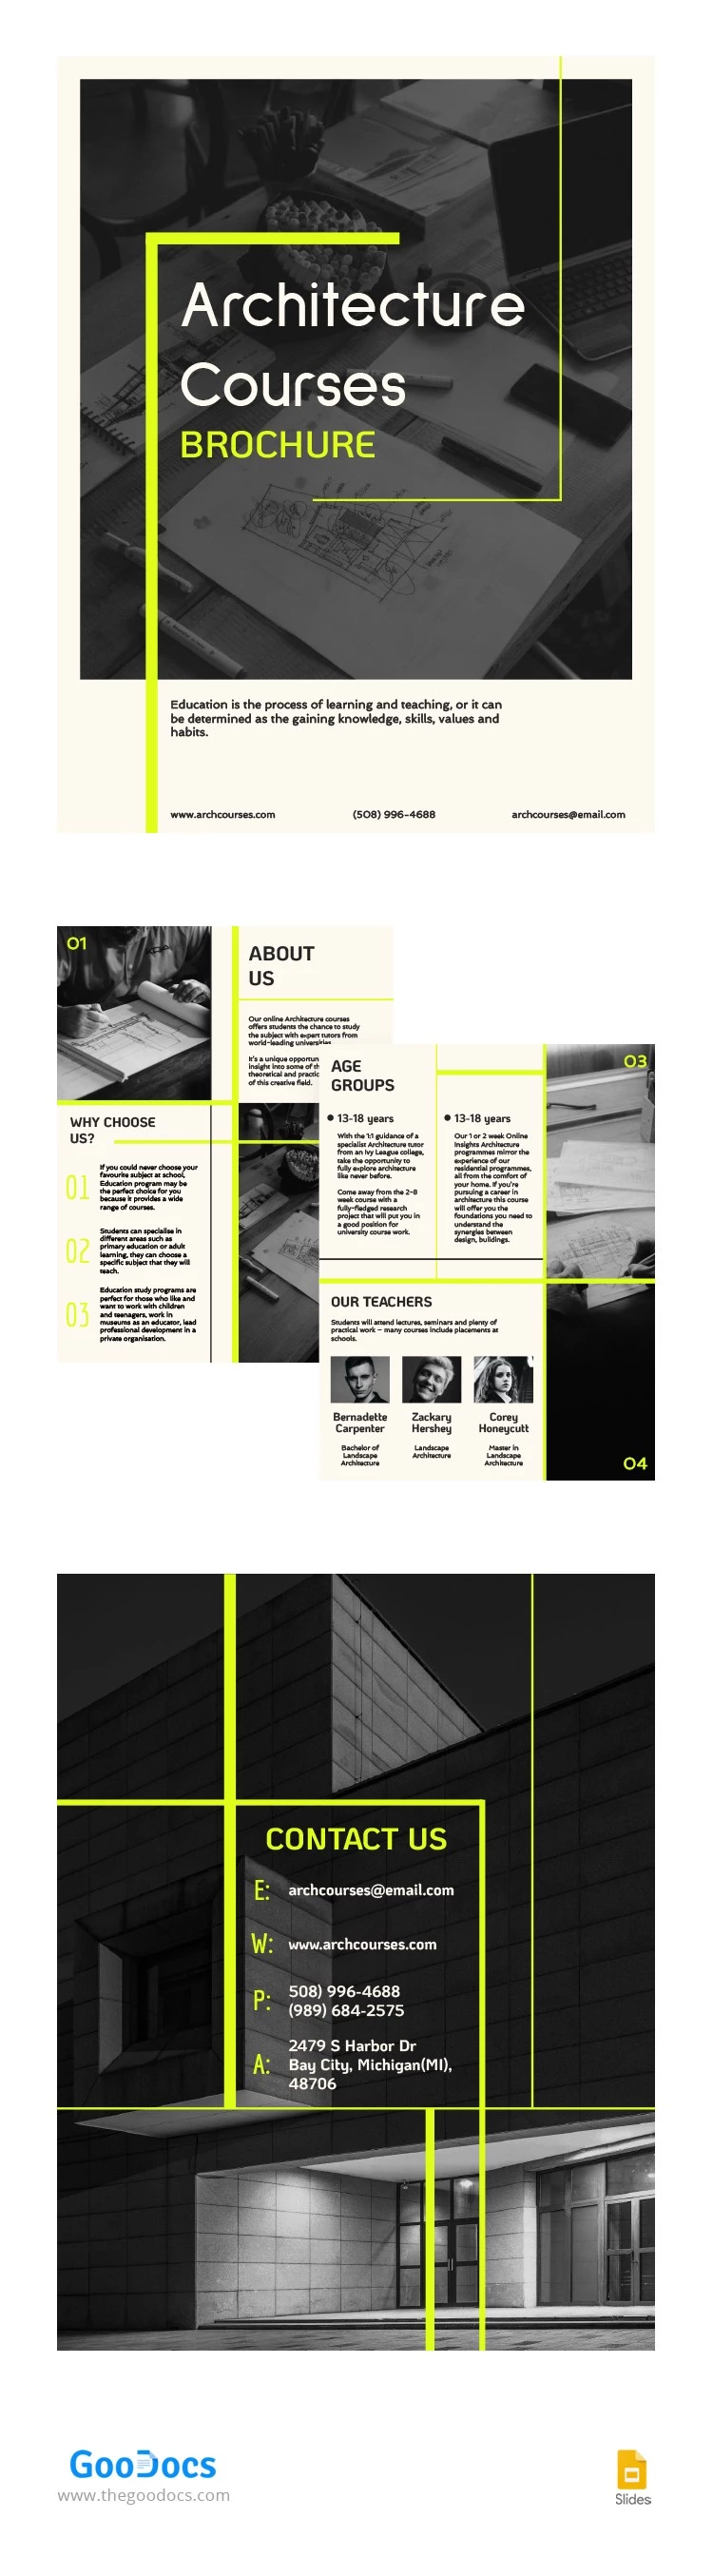 Folheto de Cursos de Arquitetura - free Google Docs Template - 10064977